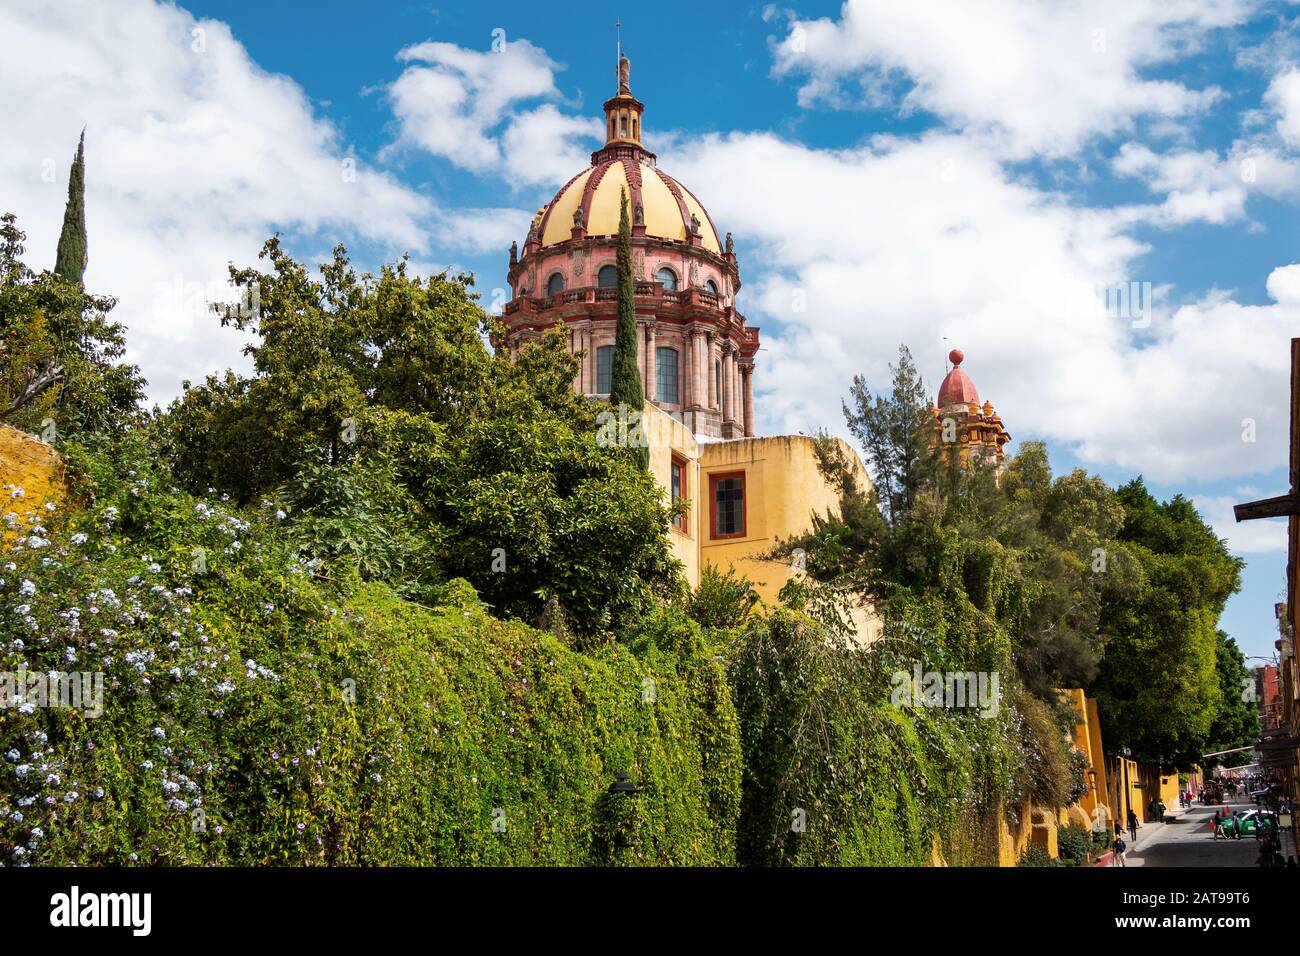 Église de l'Immaculée conception, également connue sous le nom de Las Monjas à San Miguel de Allende, Guanajuato, Mexique. Banque D'Images